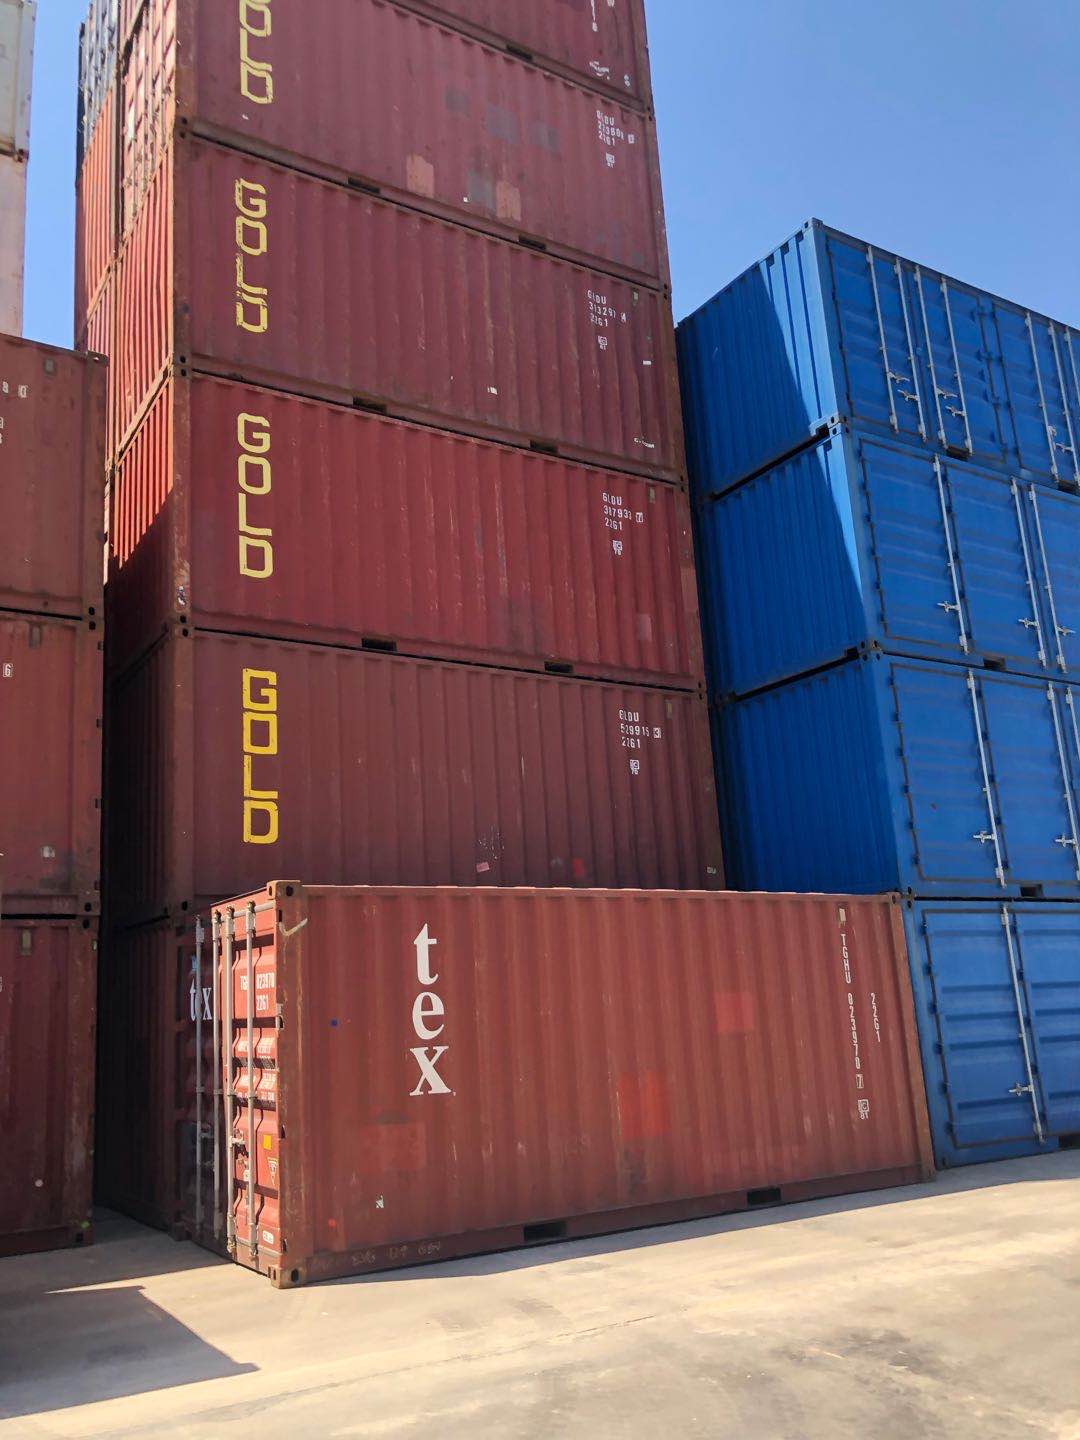 全国港口批量出租出售海运标准集装箱SOC箱